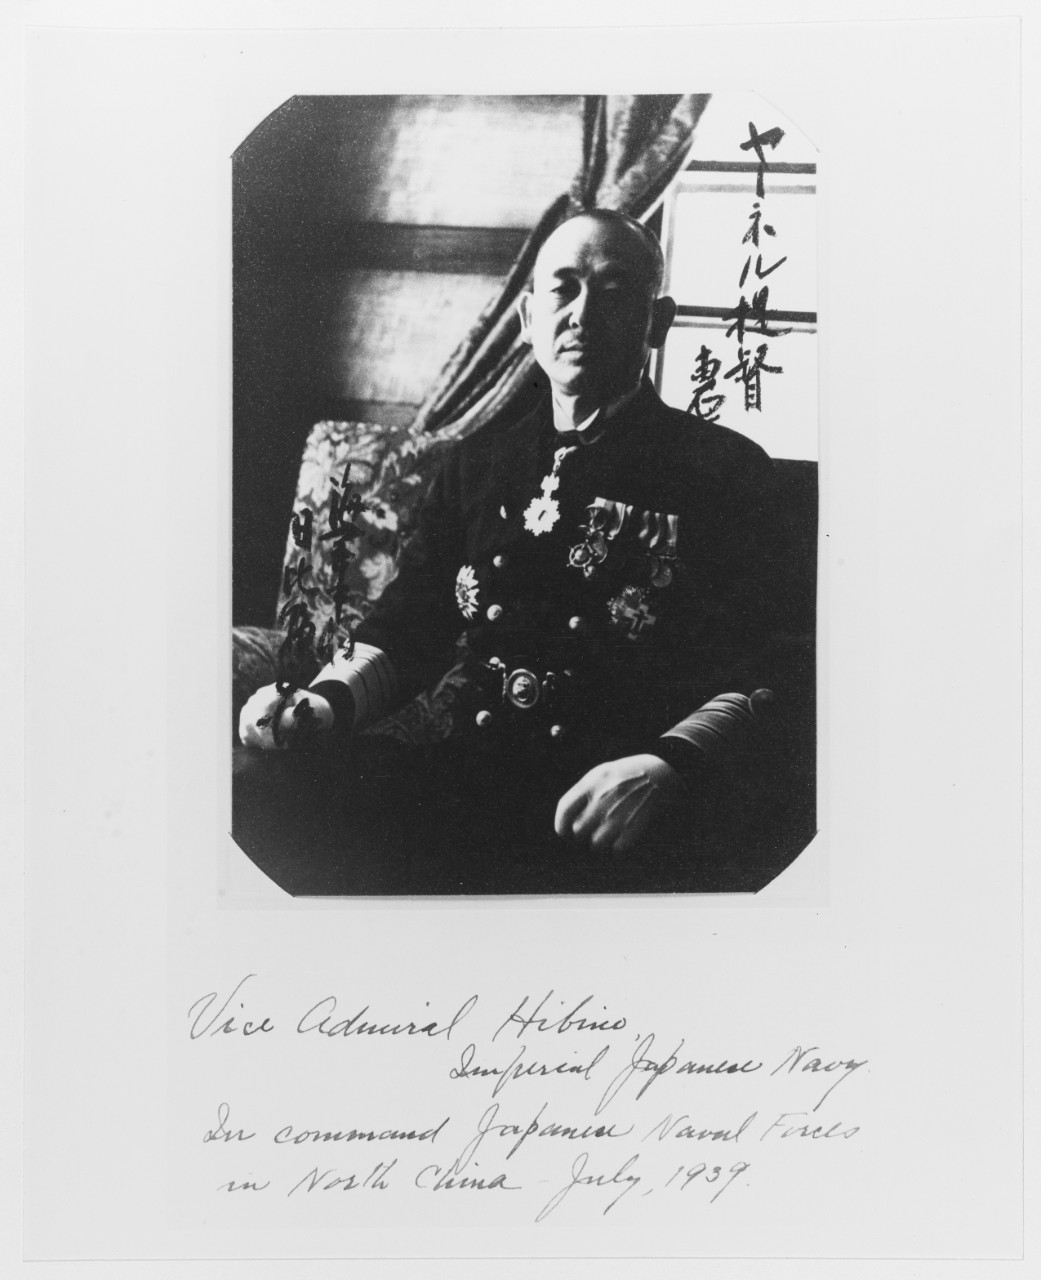 Vice Admiral Hibino, IJN